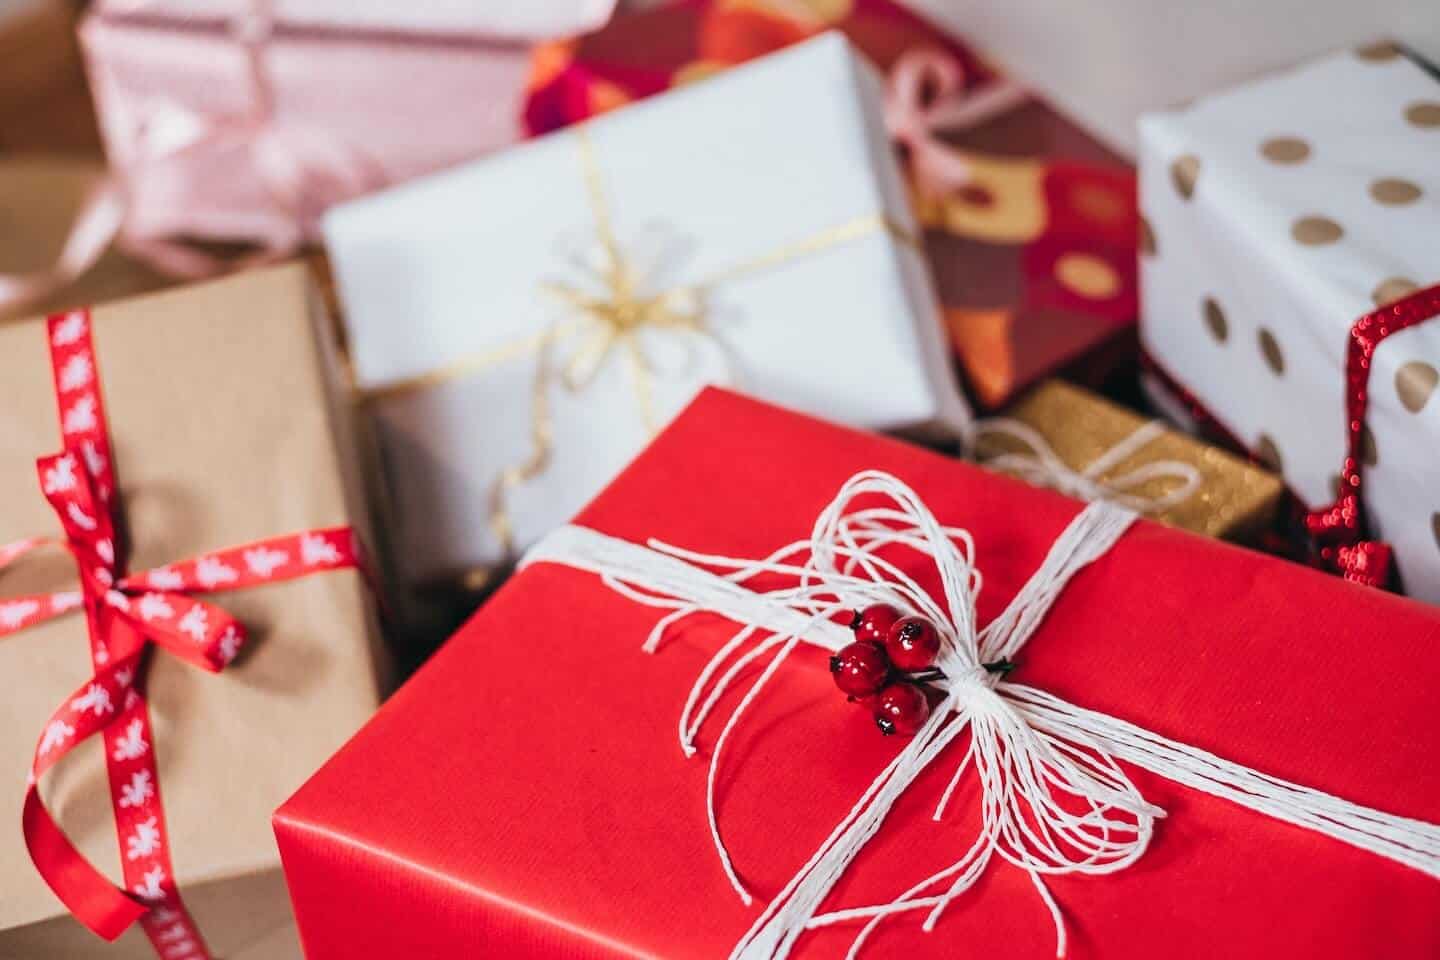 Varias cajas de regalo envueltas en cintas y papel de regalo rojo, blanco y marrón.